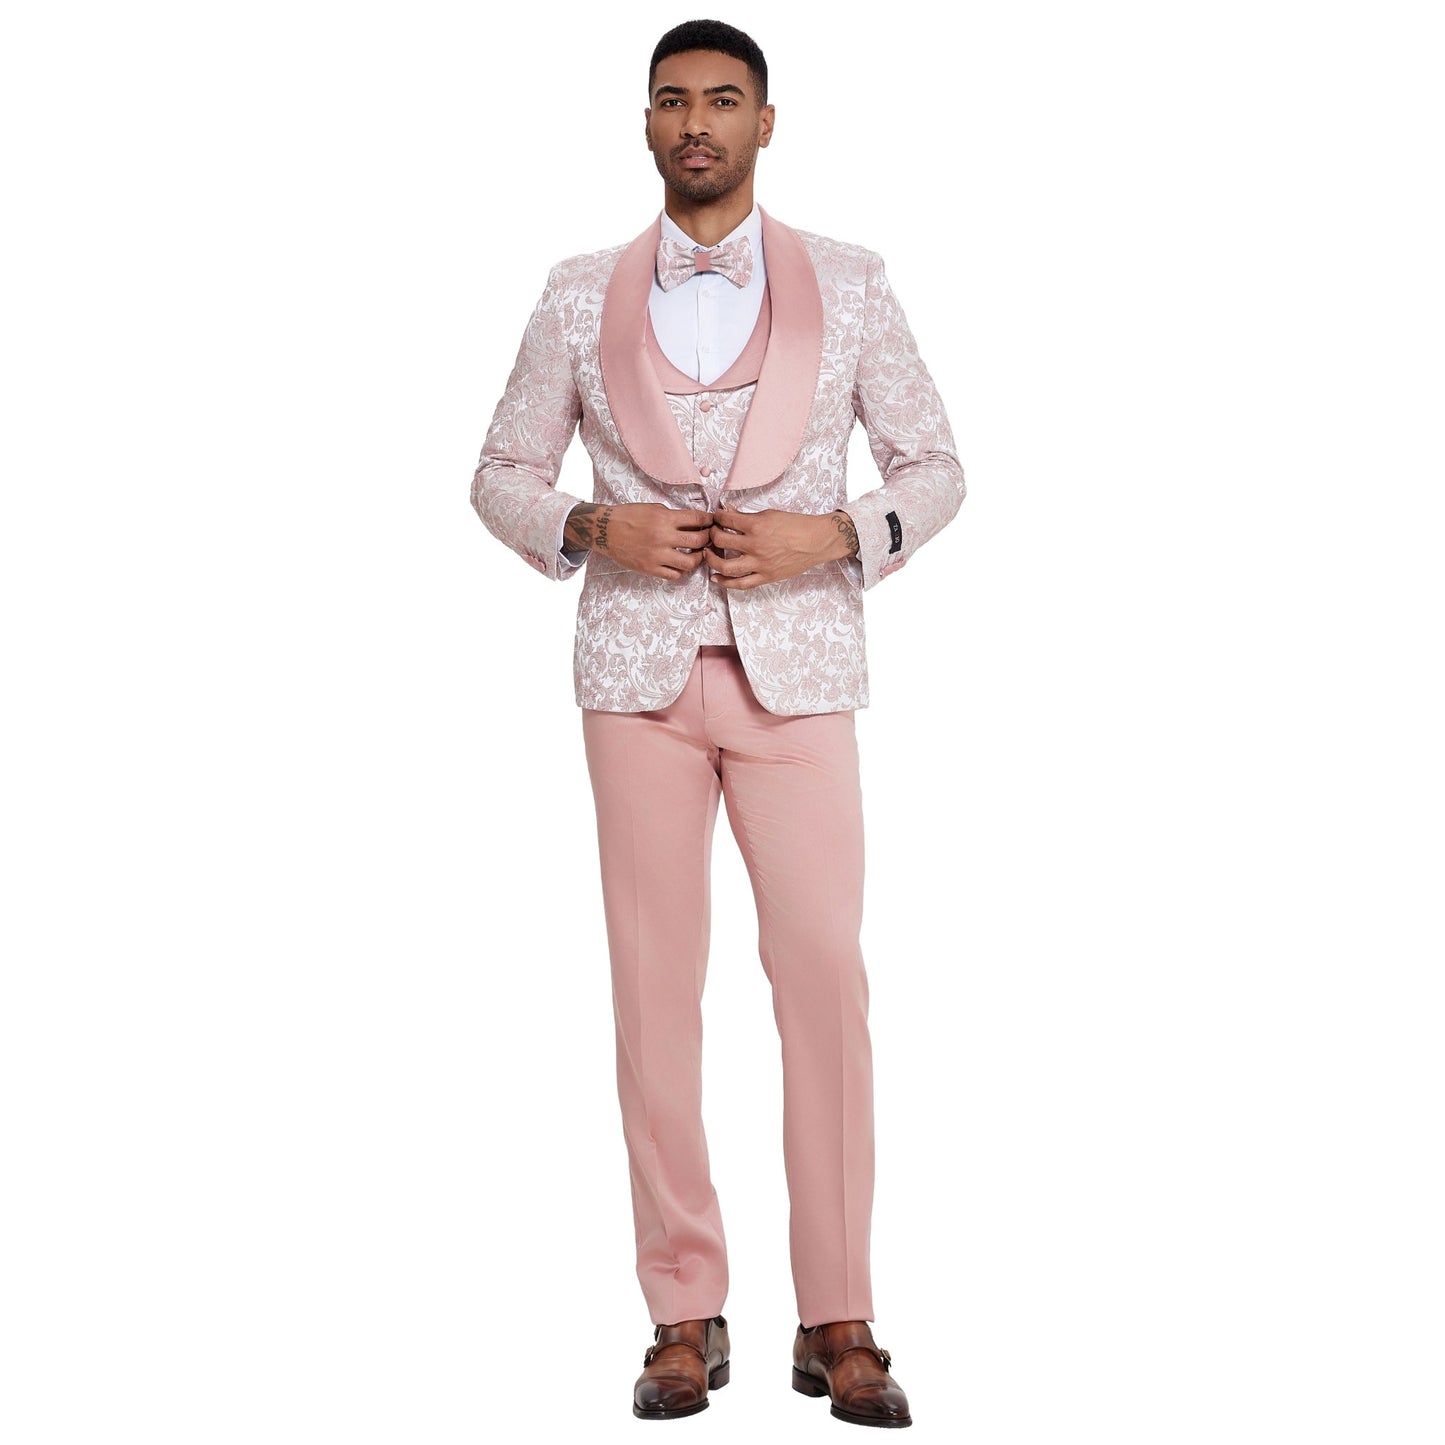 Blush Pink Paisley Tuxedo, Satin Blush Pink Pants, Blush Pink Tuxedo with Shawl Lapels, Satin Lapels on Vest, Blush Buttons Detail, Slim Fit Men's Suit, Blush Pink Bowtie.